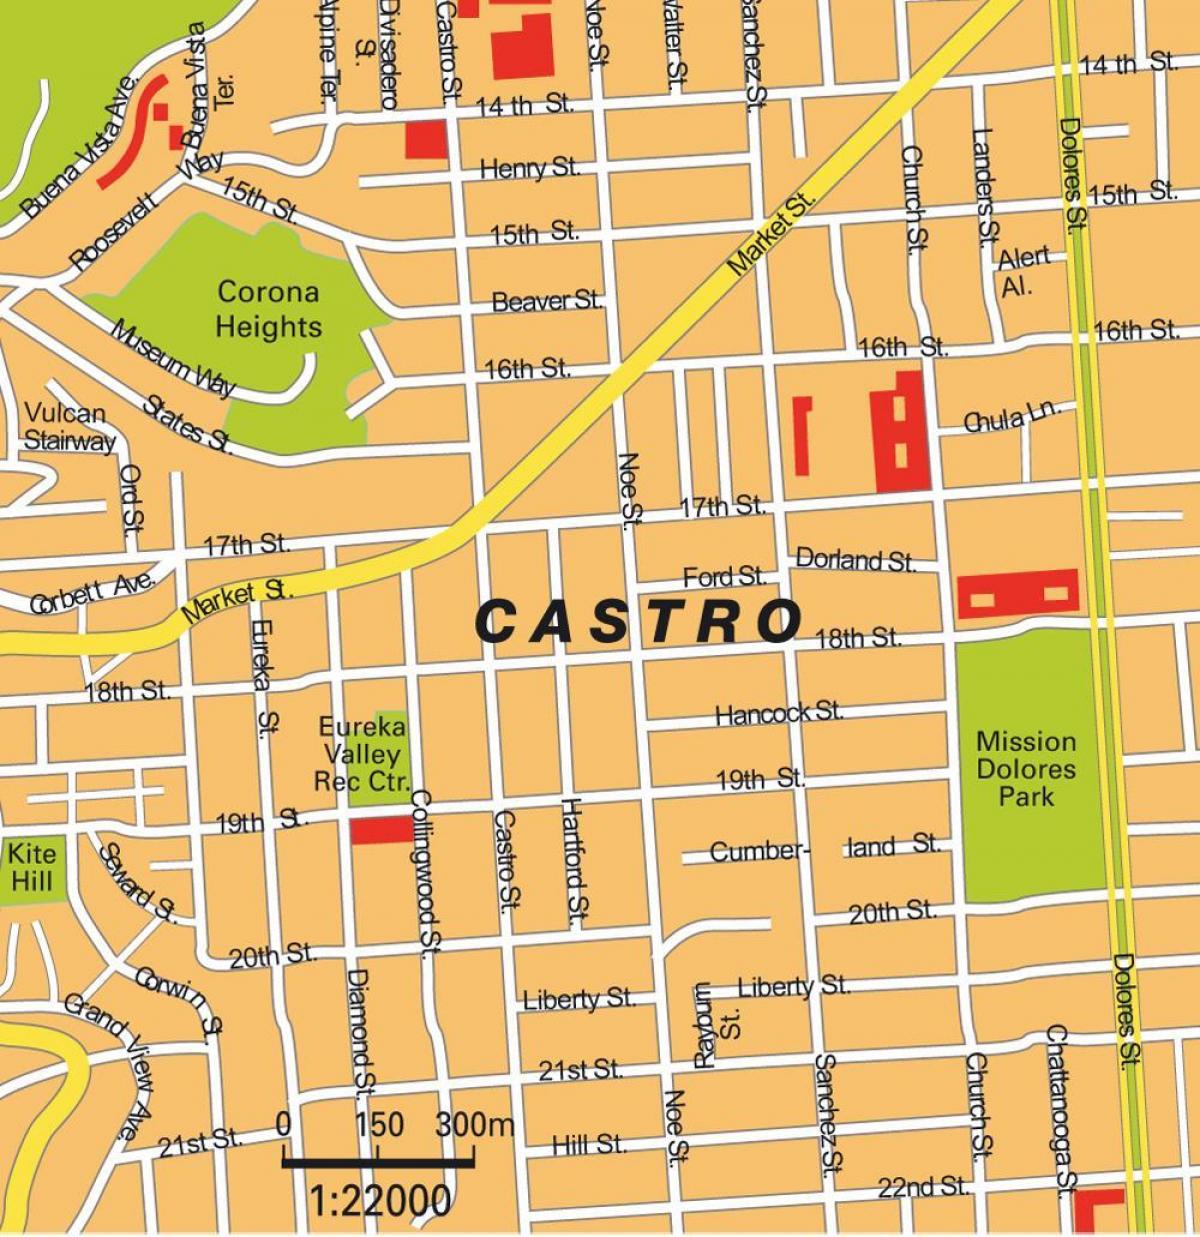 Kaart van castro San Francisco